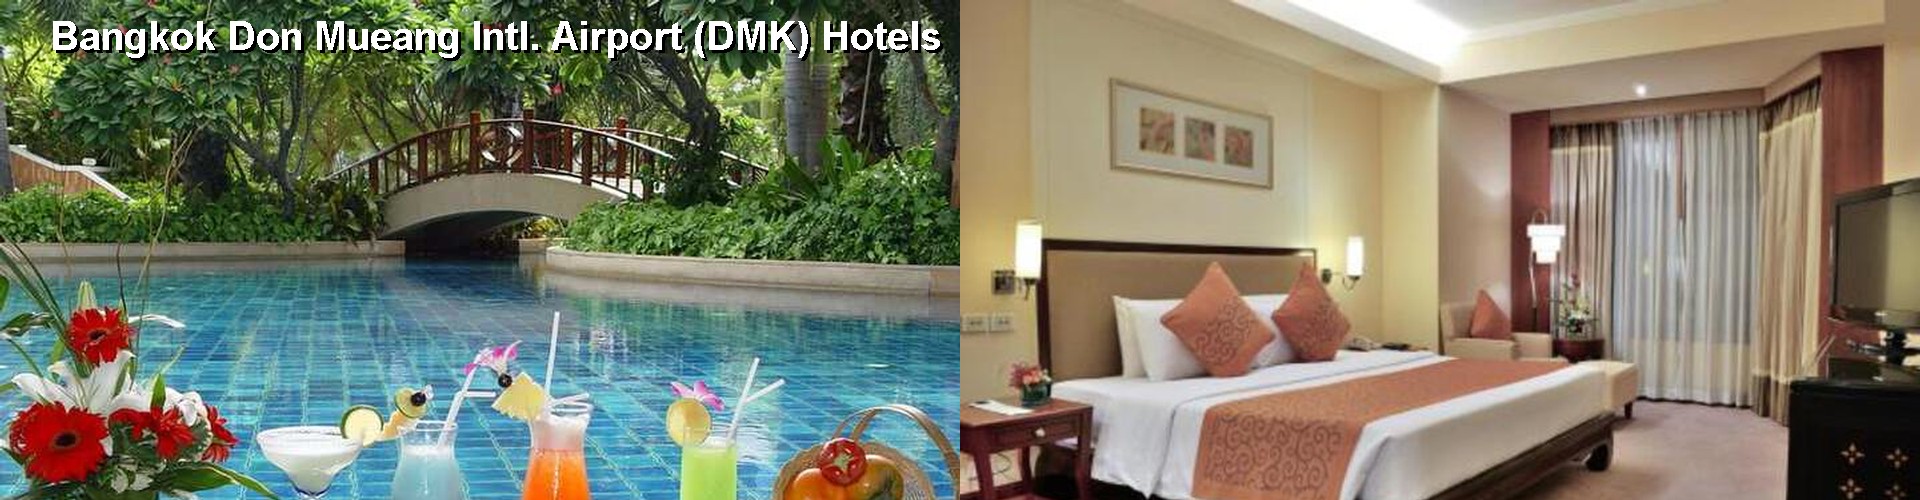 5 Best Hotels near Bangkok Don Mueang Intl. Airport (DMK)